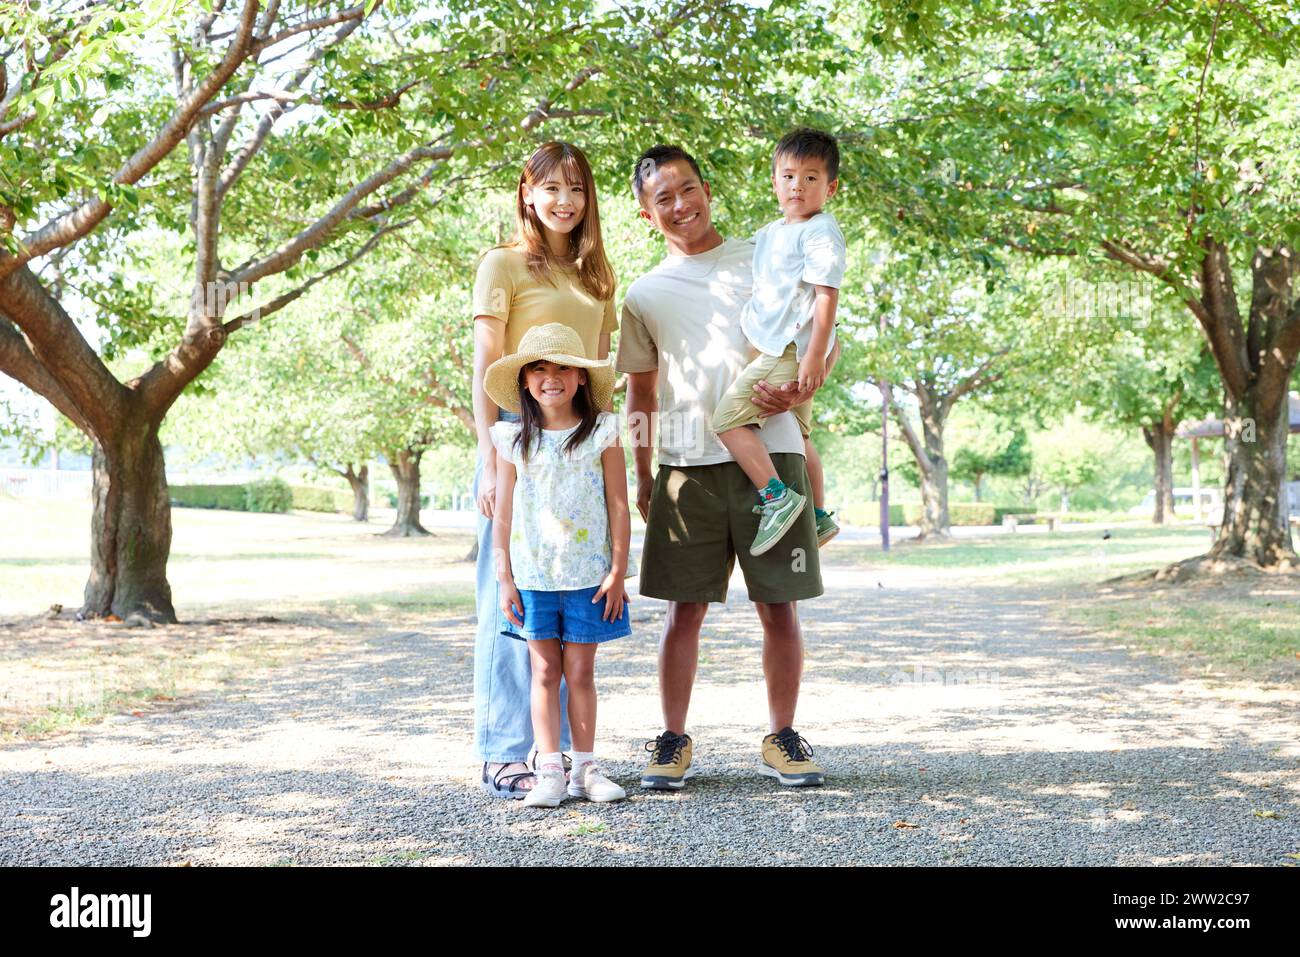 Eine Familie posiert für ein Foto in einem Park Stockfoto